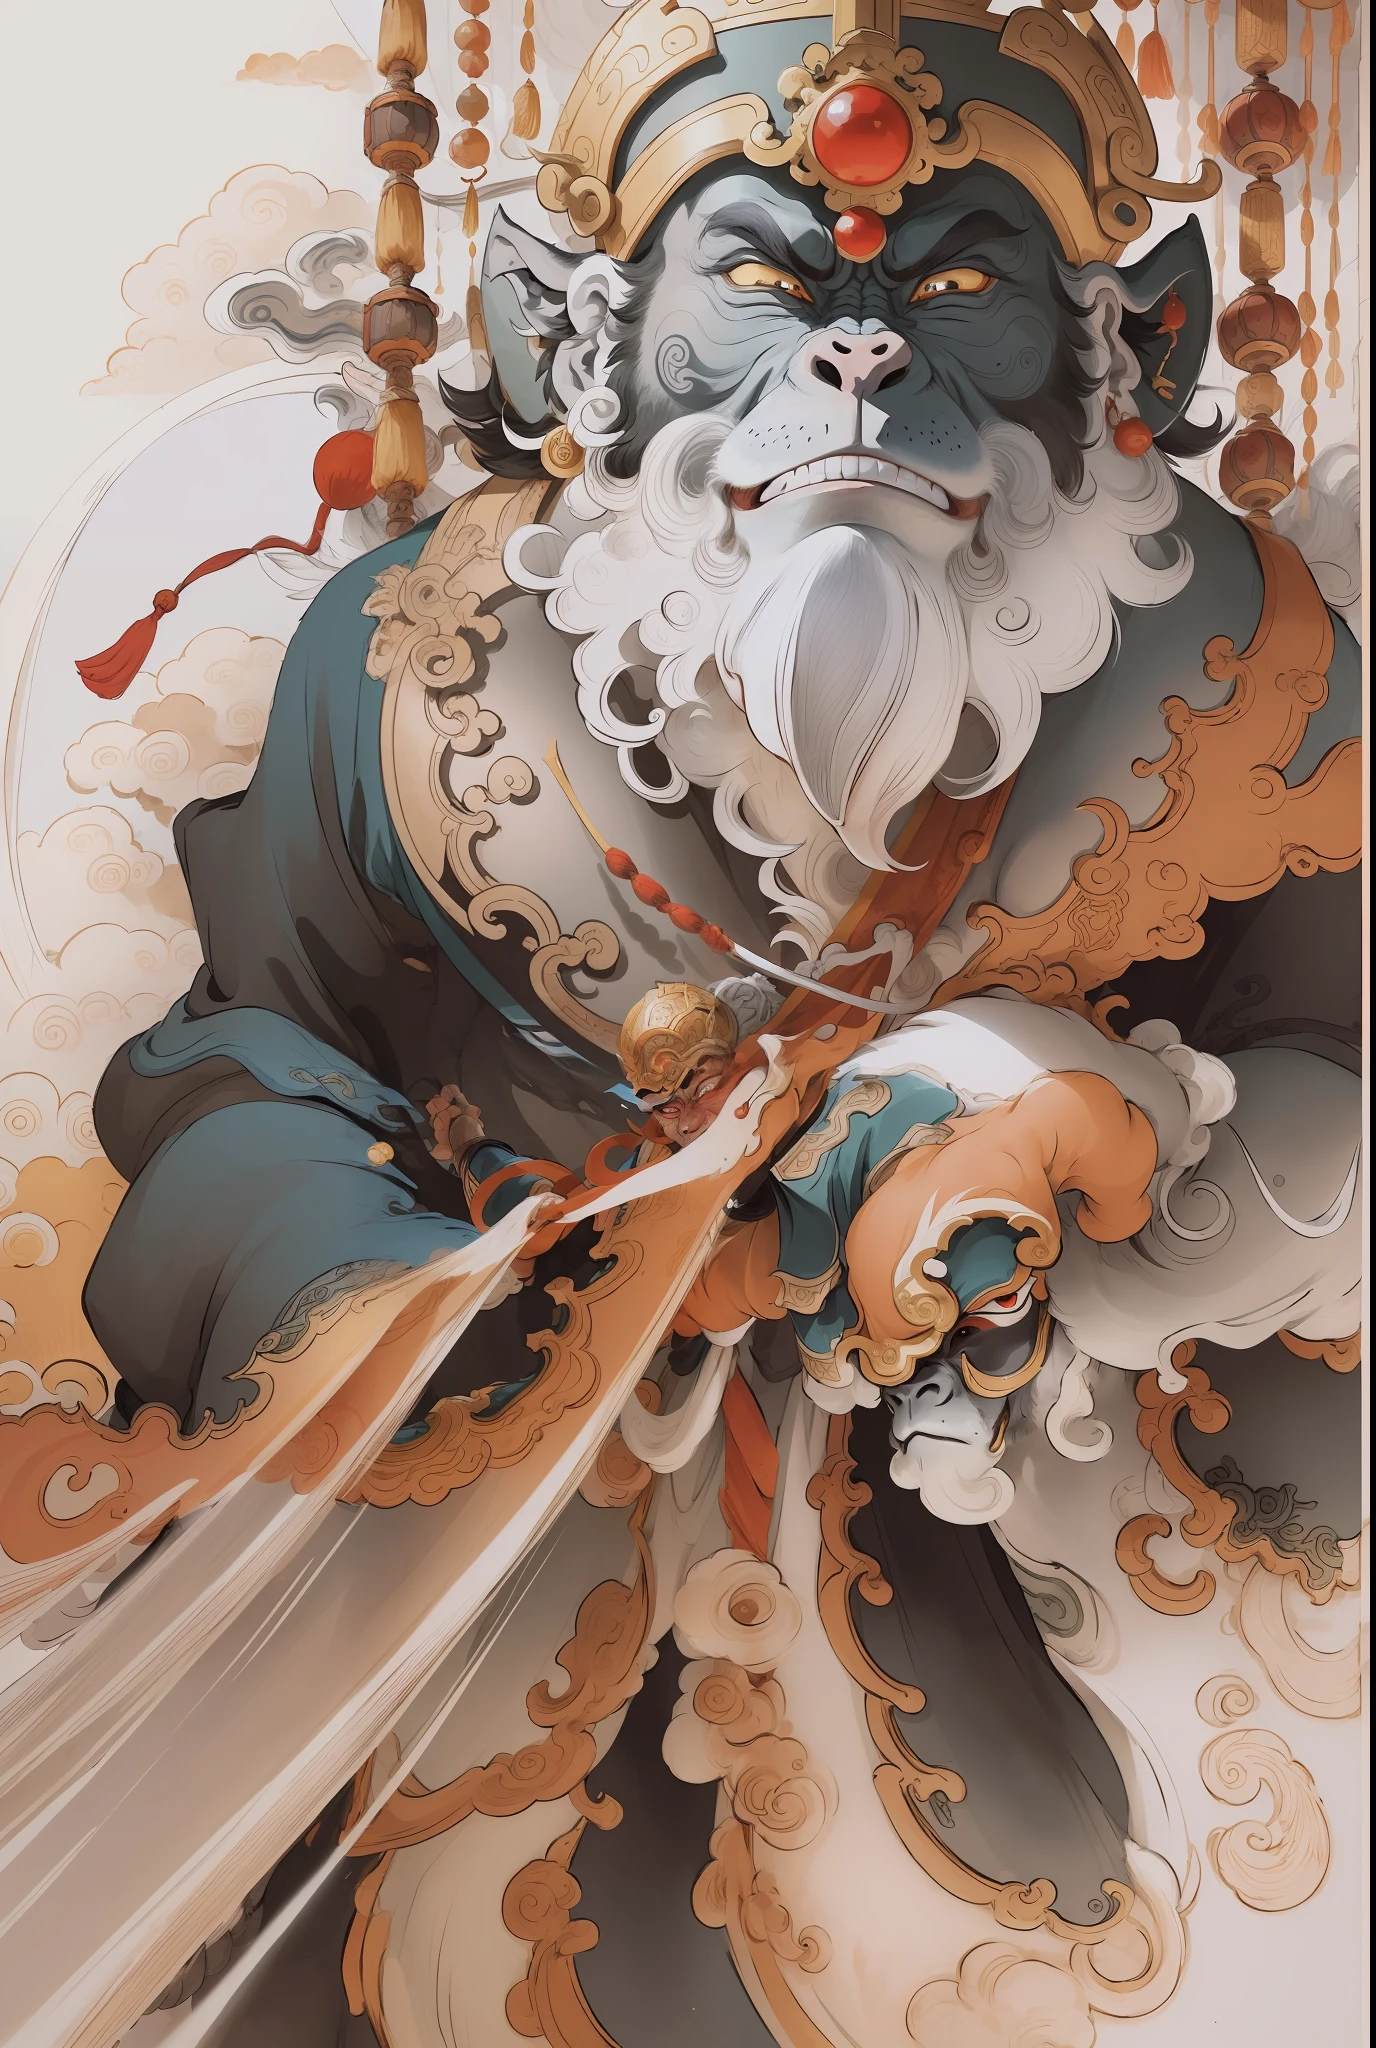 Король обезьян, Ци Тянь Дайшэн Тяньгун (из путешествия на Запад), стиль рисования тушью, чистые цвета, решительные сокращения, пустое пространство, от руки, шедевр, Супер подробный, эпическая композиция, высокое качество, высшее качество, стиль Пиксар, перенасыщенный, сюрреалистический, артгерм --v 6